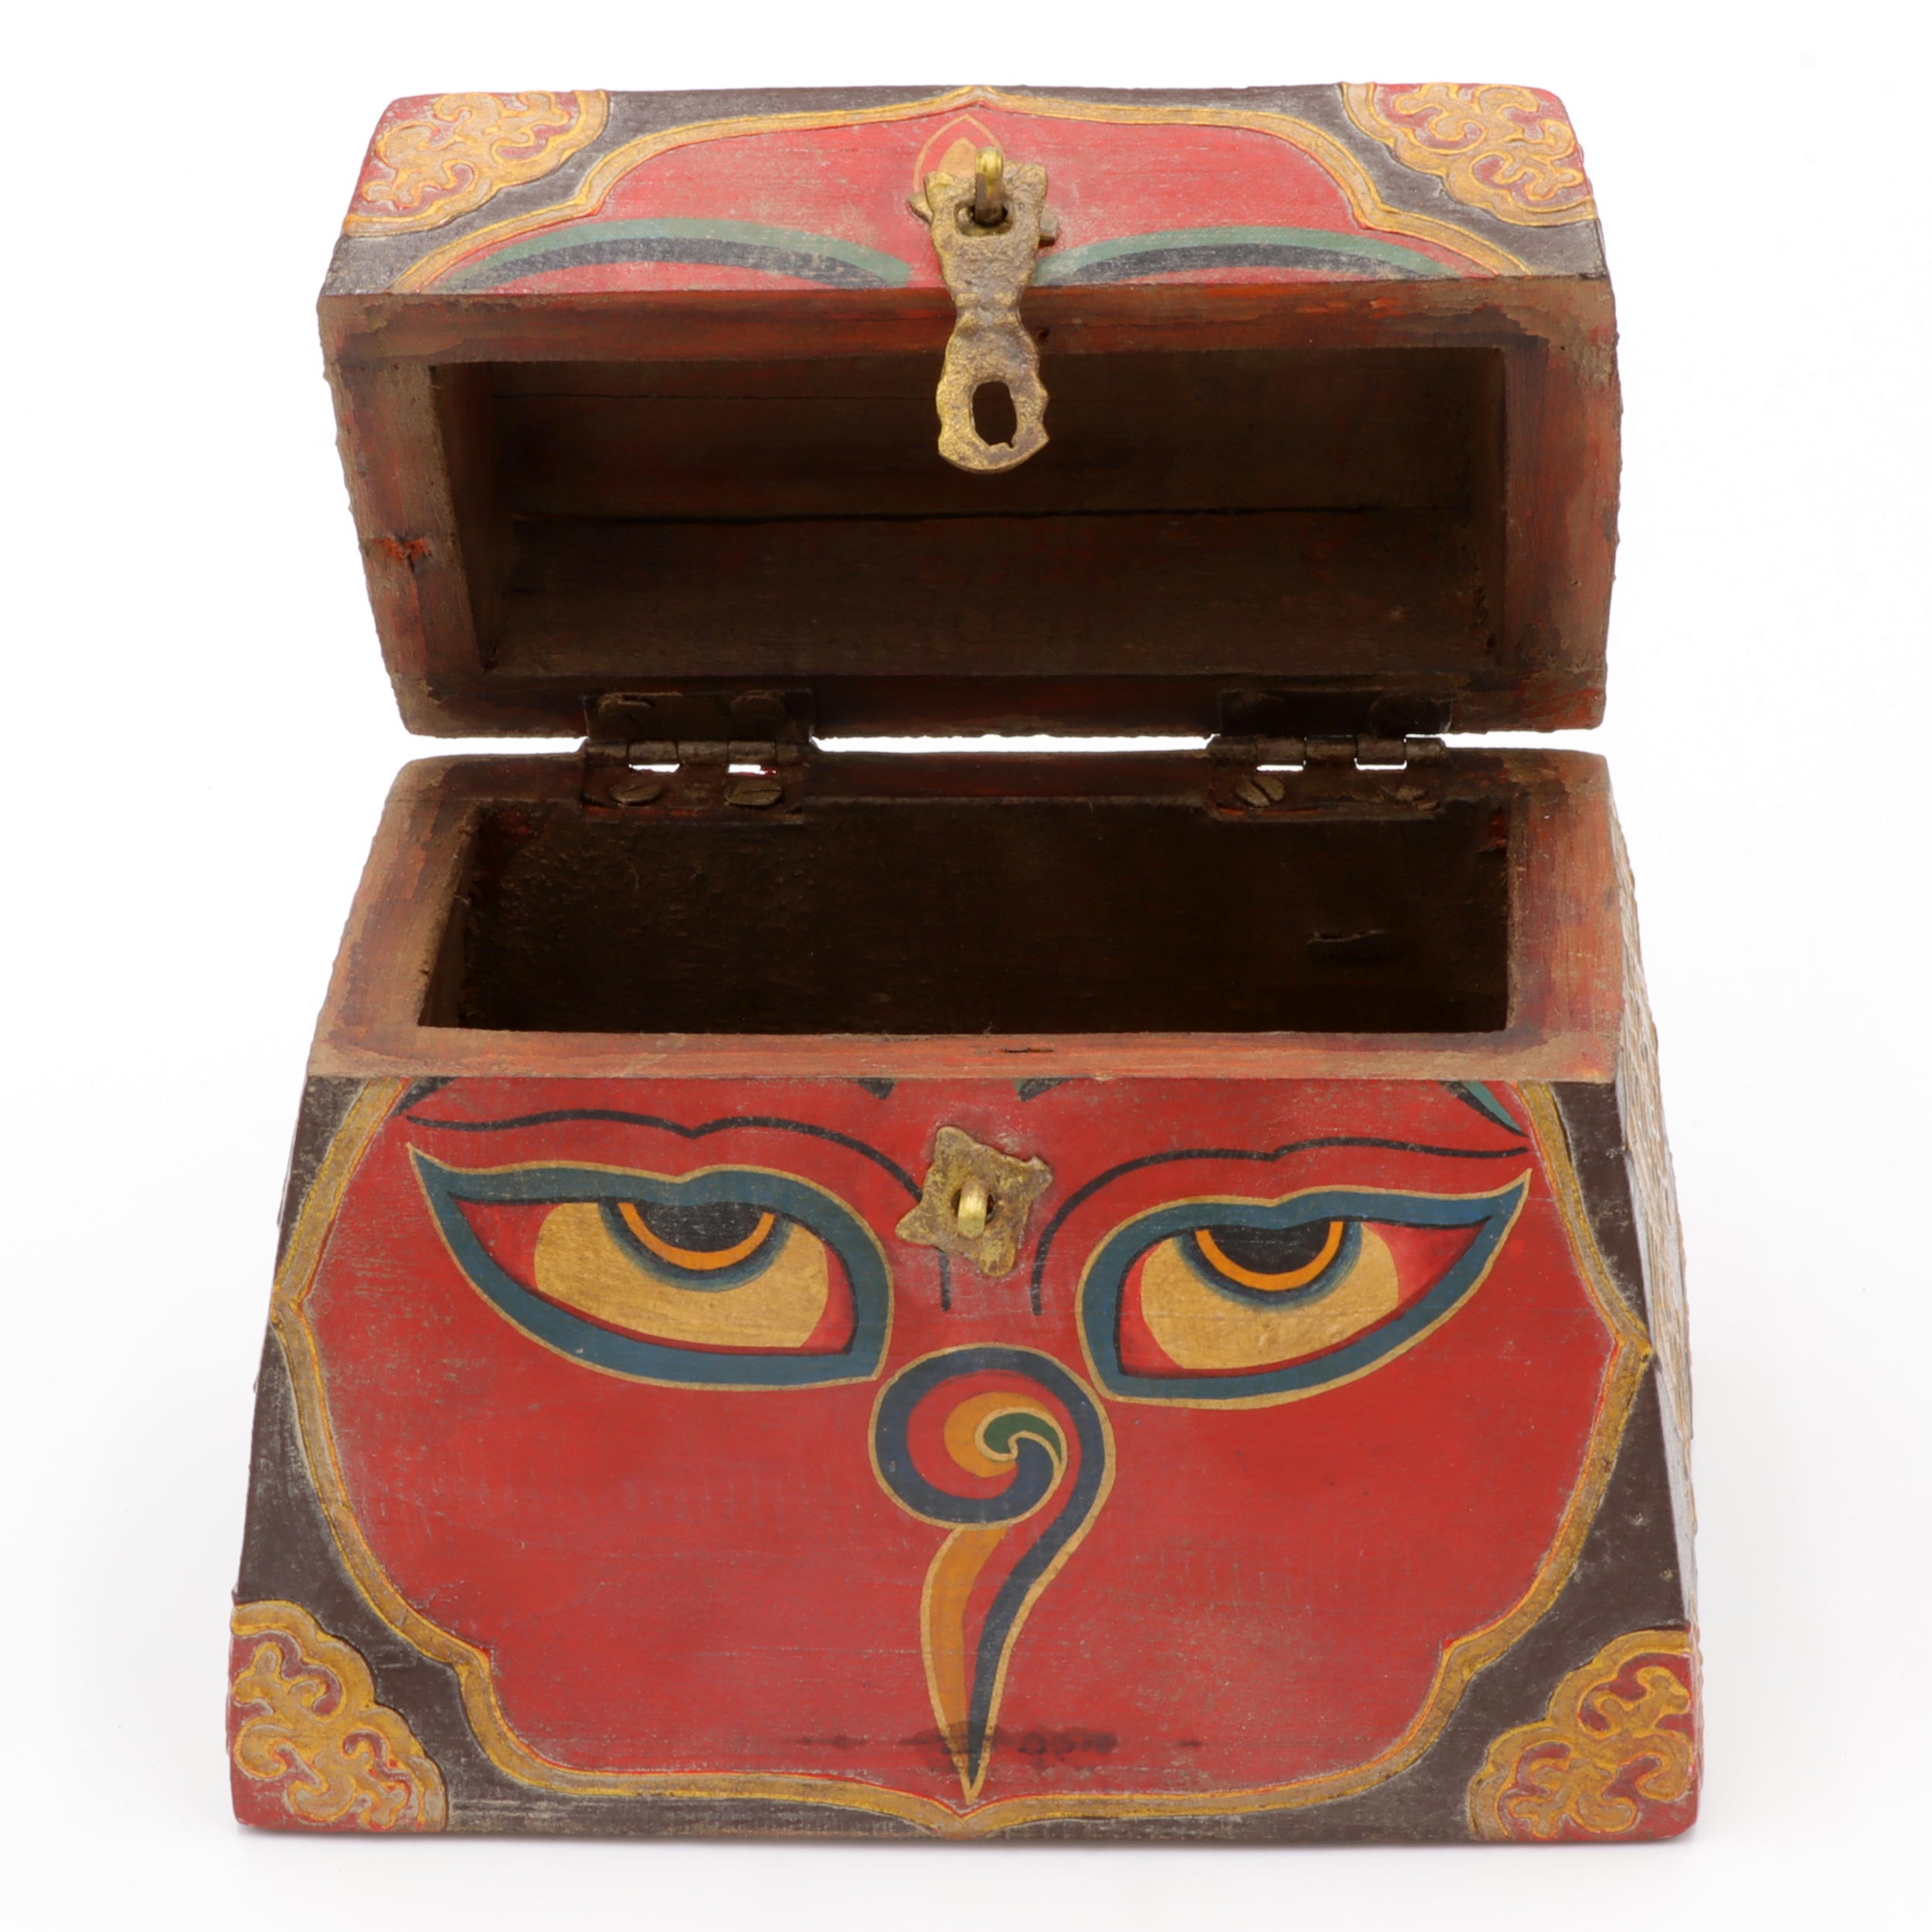 Handbemalte Kiste aus Holz - Buddha Eyes, Lotus, Endlosknoten - Trapez Design - typisch nepalesiche Farben - fair gehandelt aus Nepal